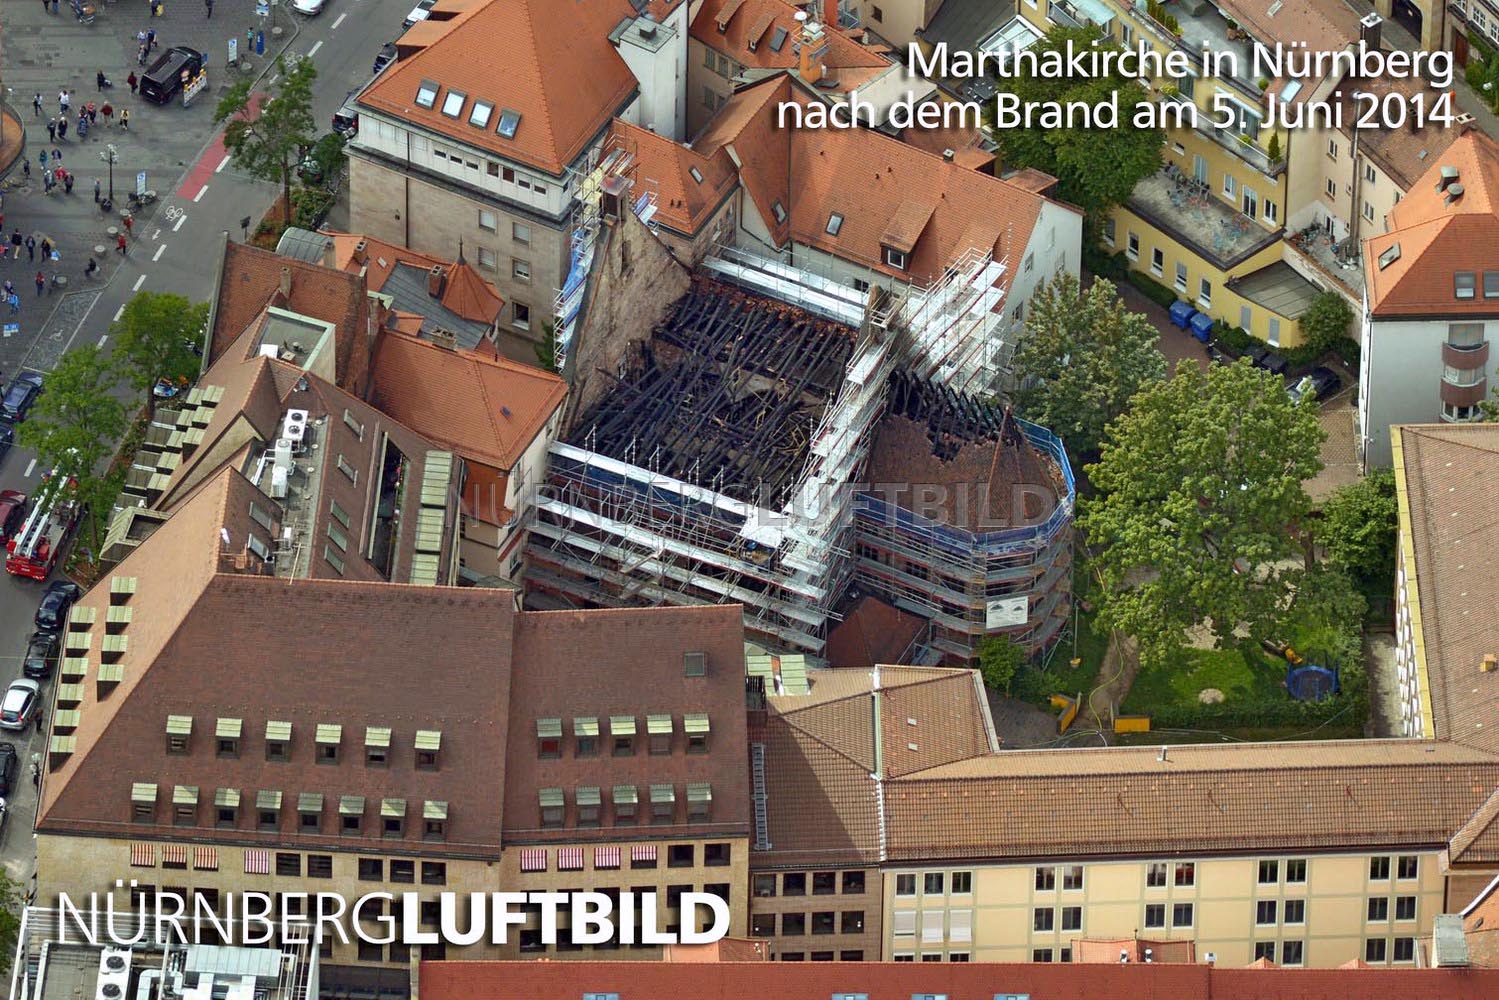 Marthakitschen in Nürnberg nach dem Brand am 5. Juni 2014, Luftbild